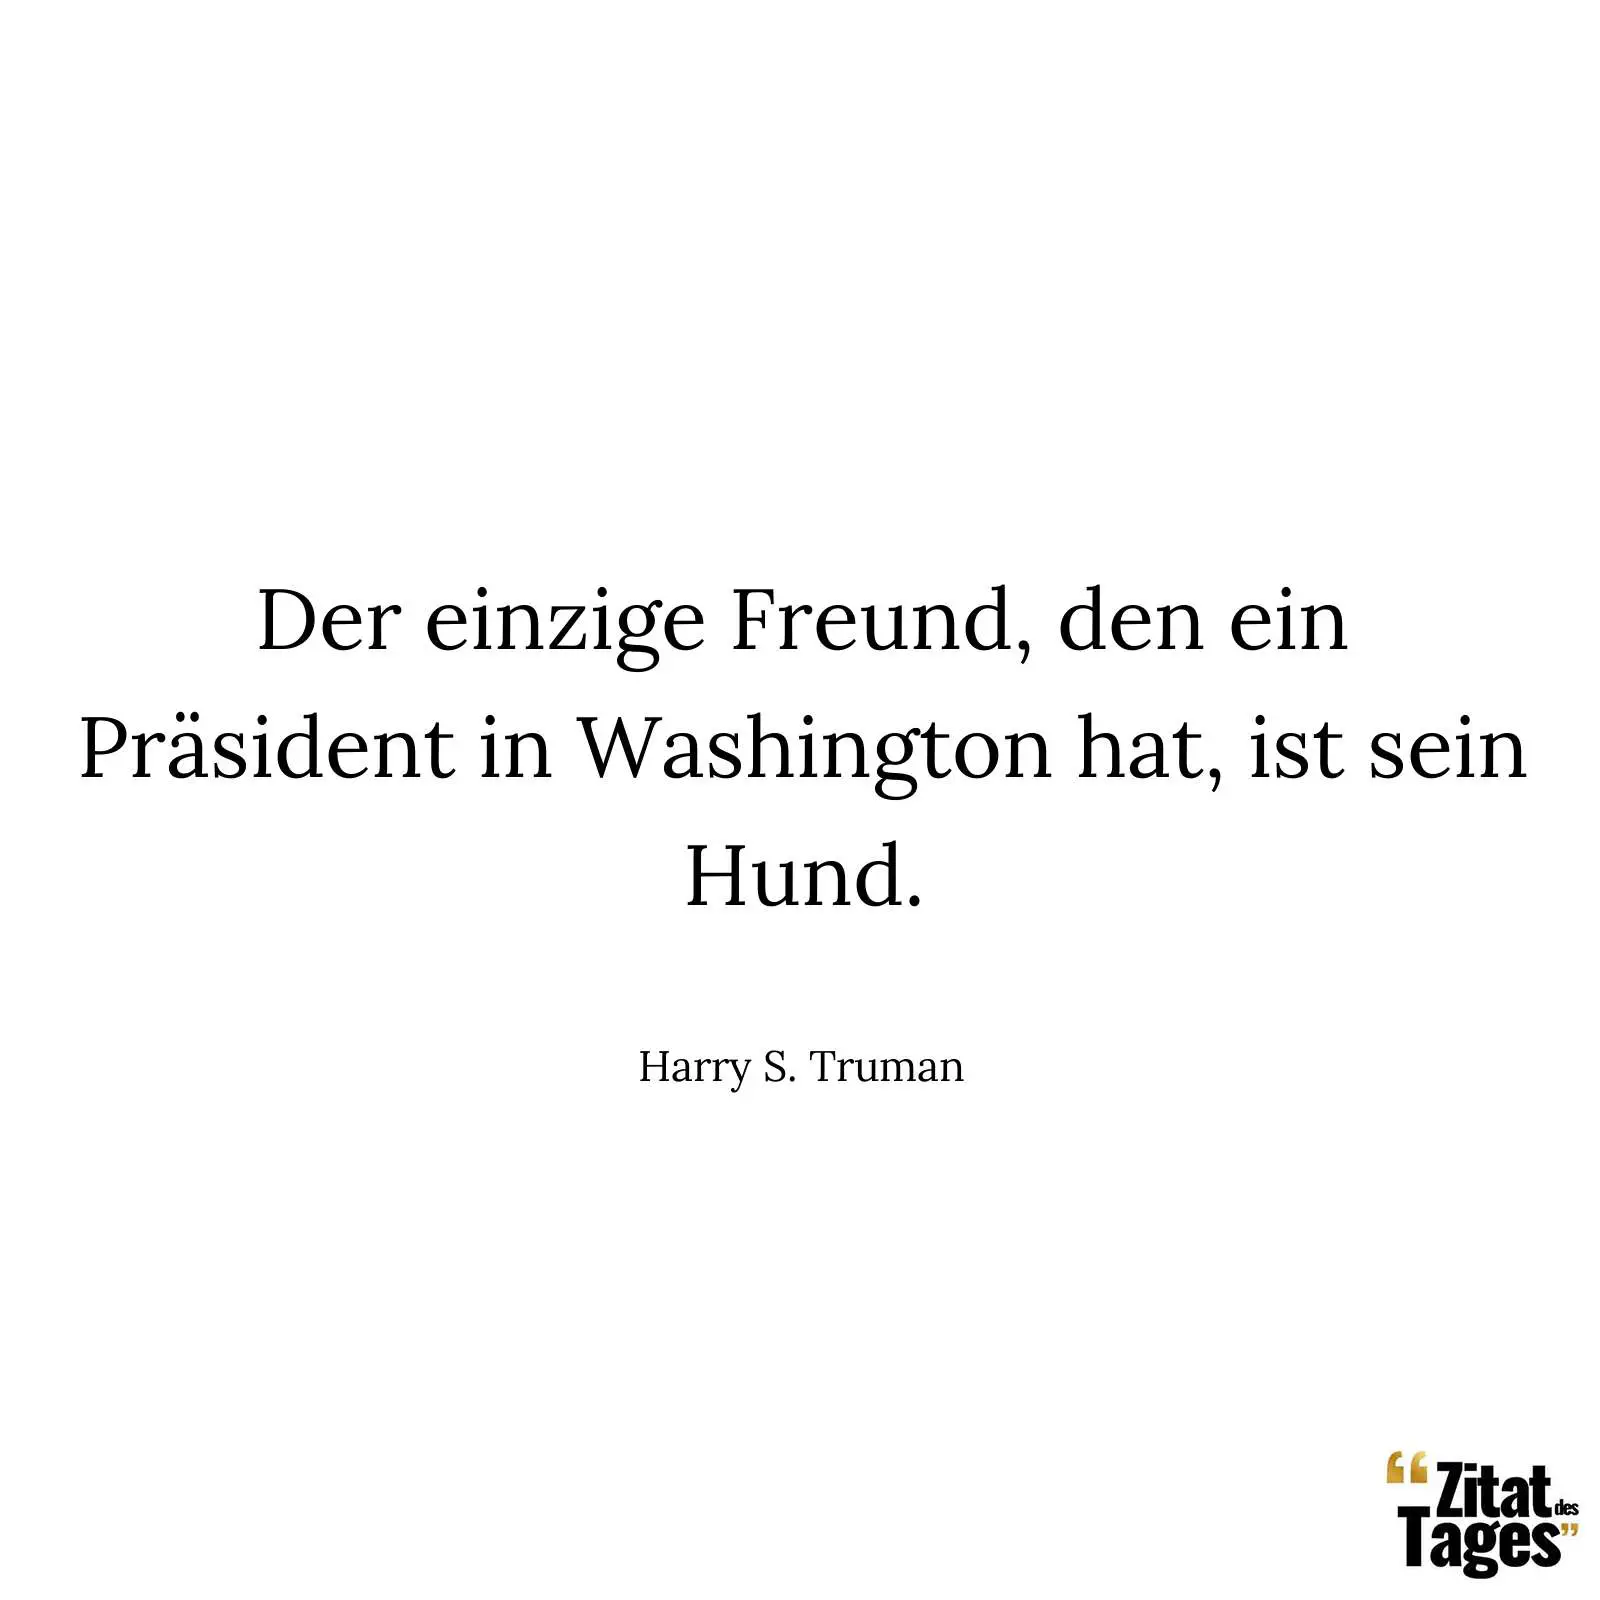 Der einzige Freund, den ein Präsident in Washington hat, ist sein Hund. - Harry S. Truman